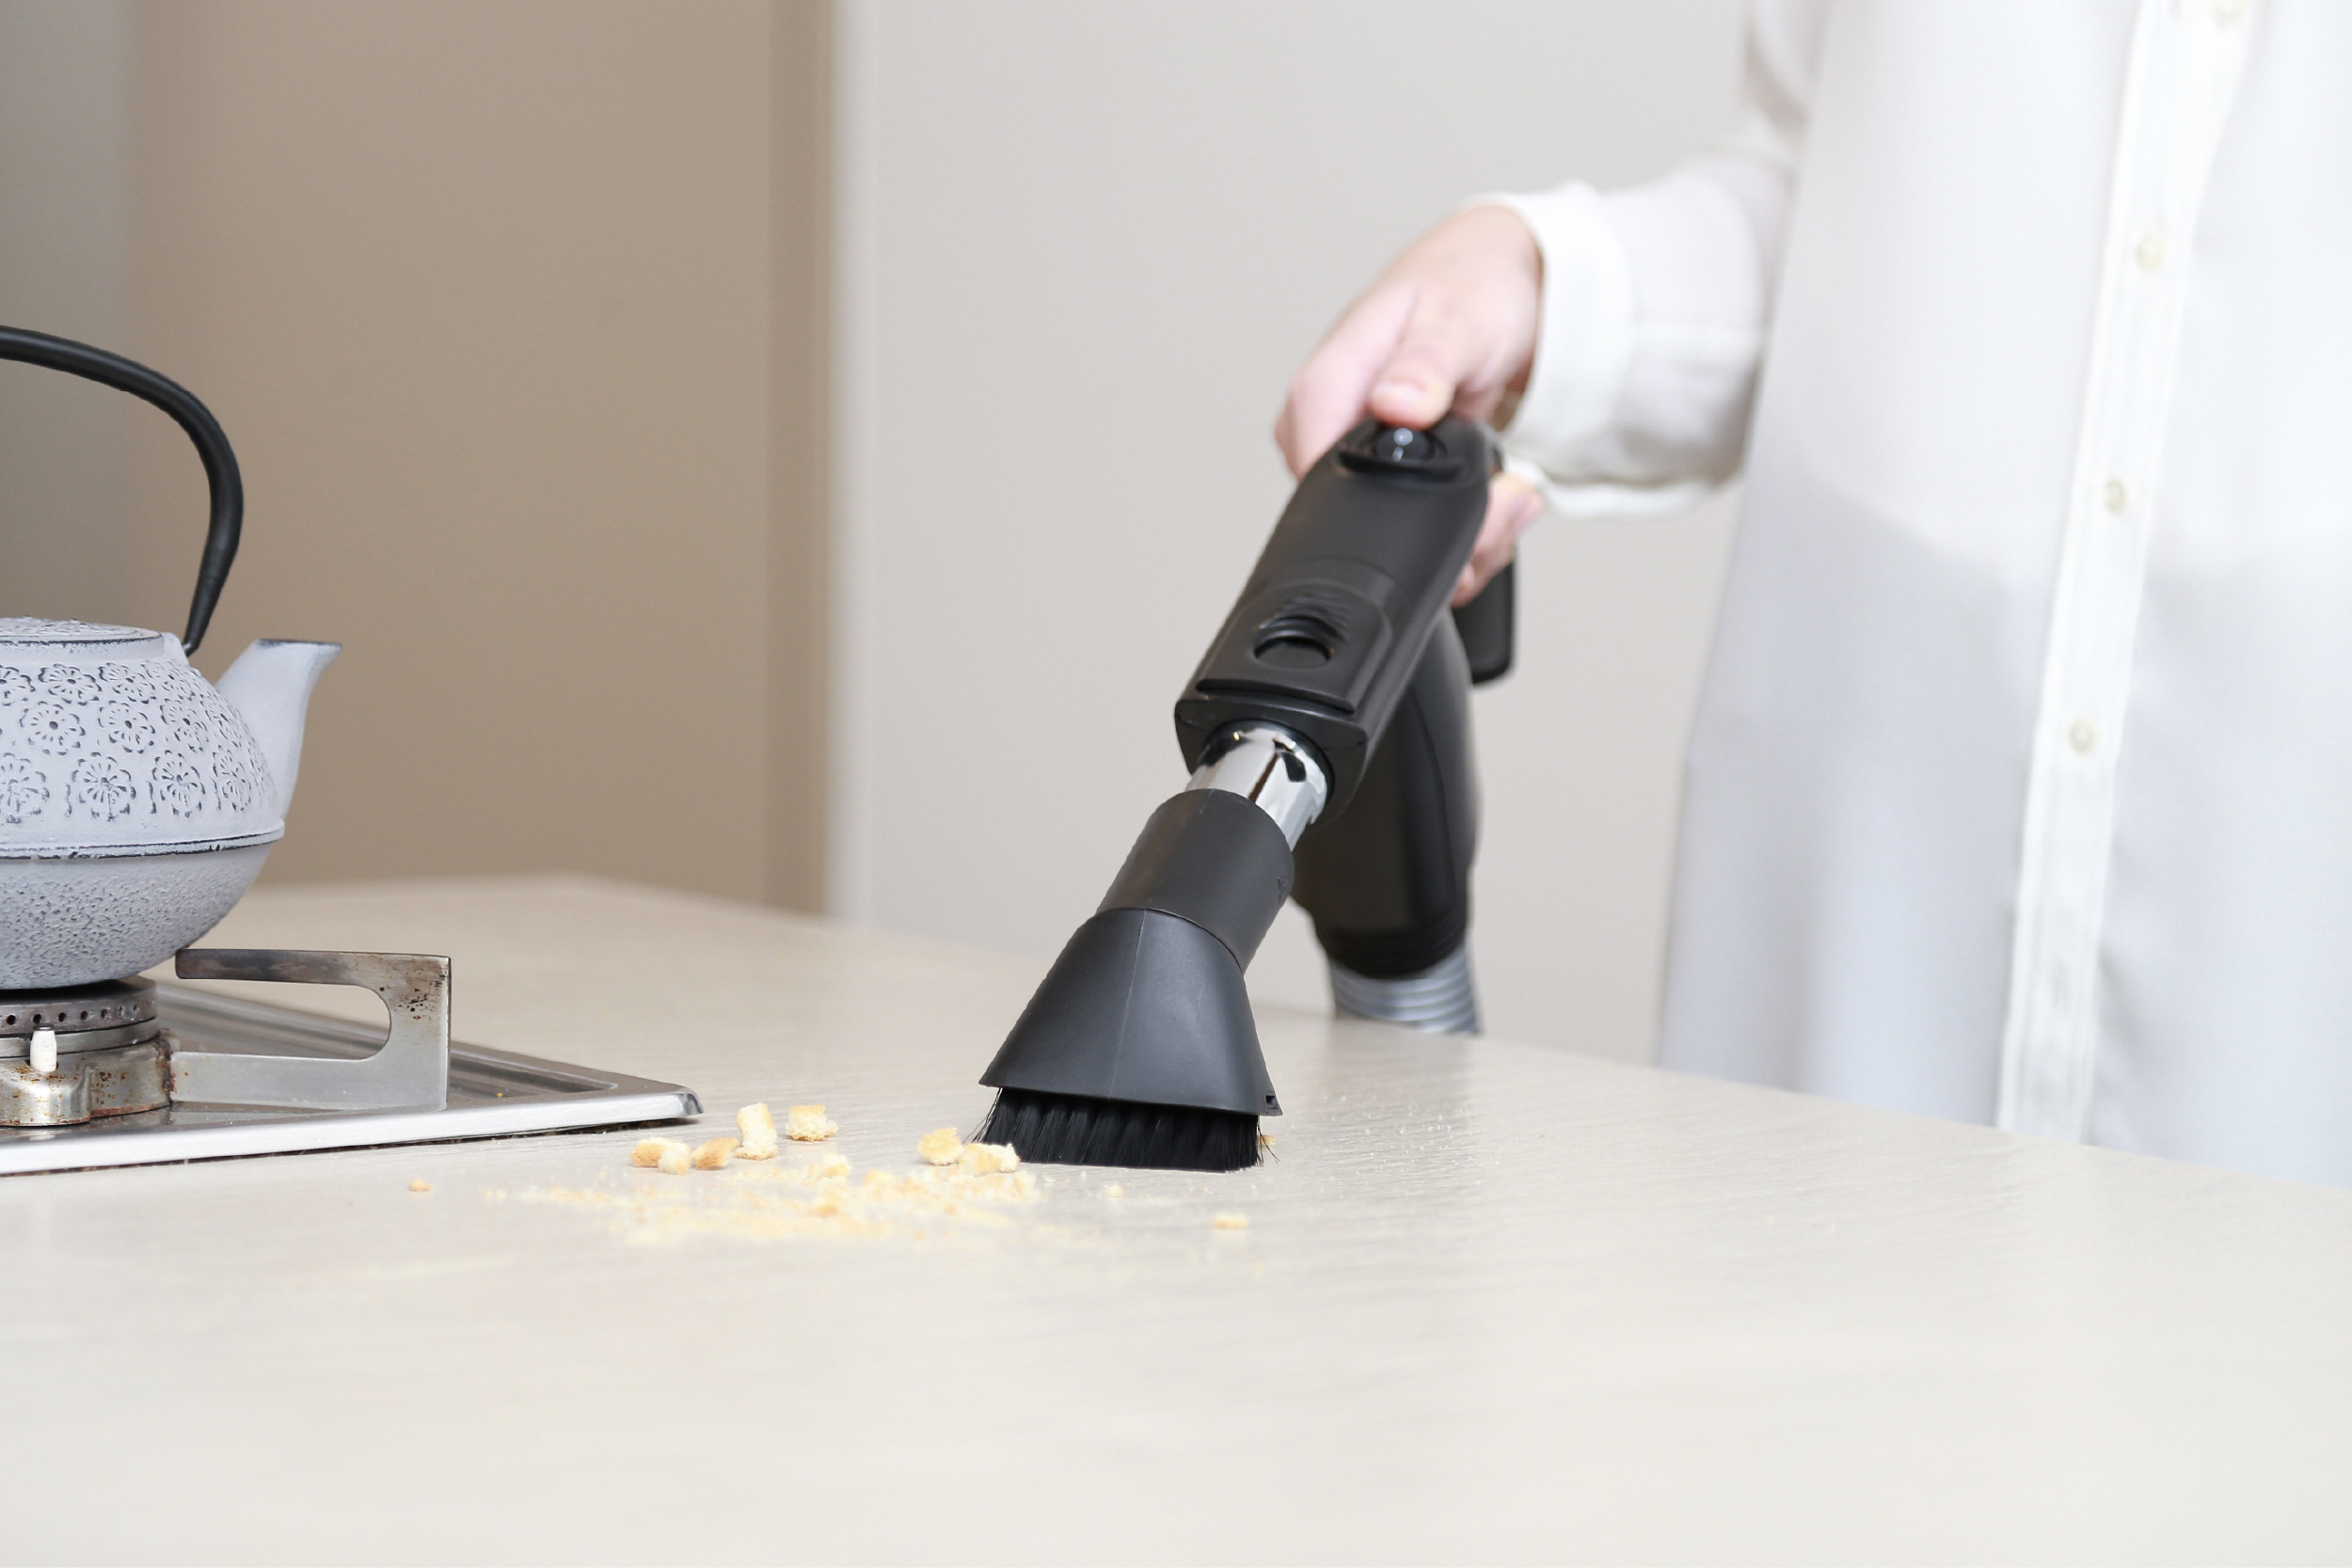 Utilizzo della spazzola per spolverare nel piano di lavoro di una cucina per aspirare delle briciole con l'aspirapolvere centralizzato